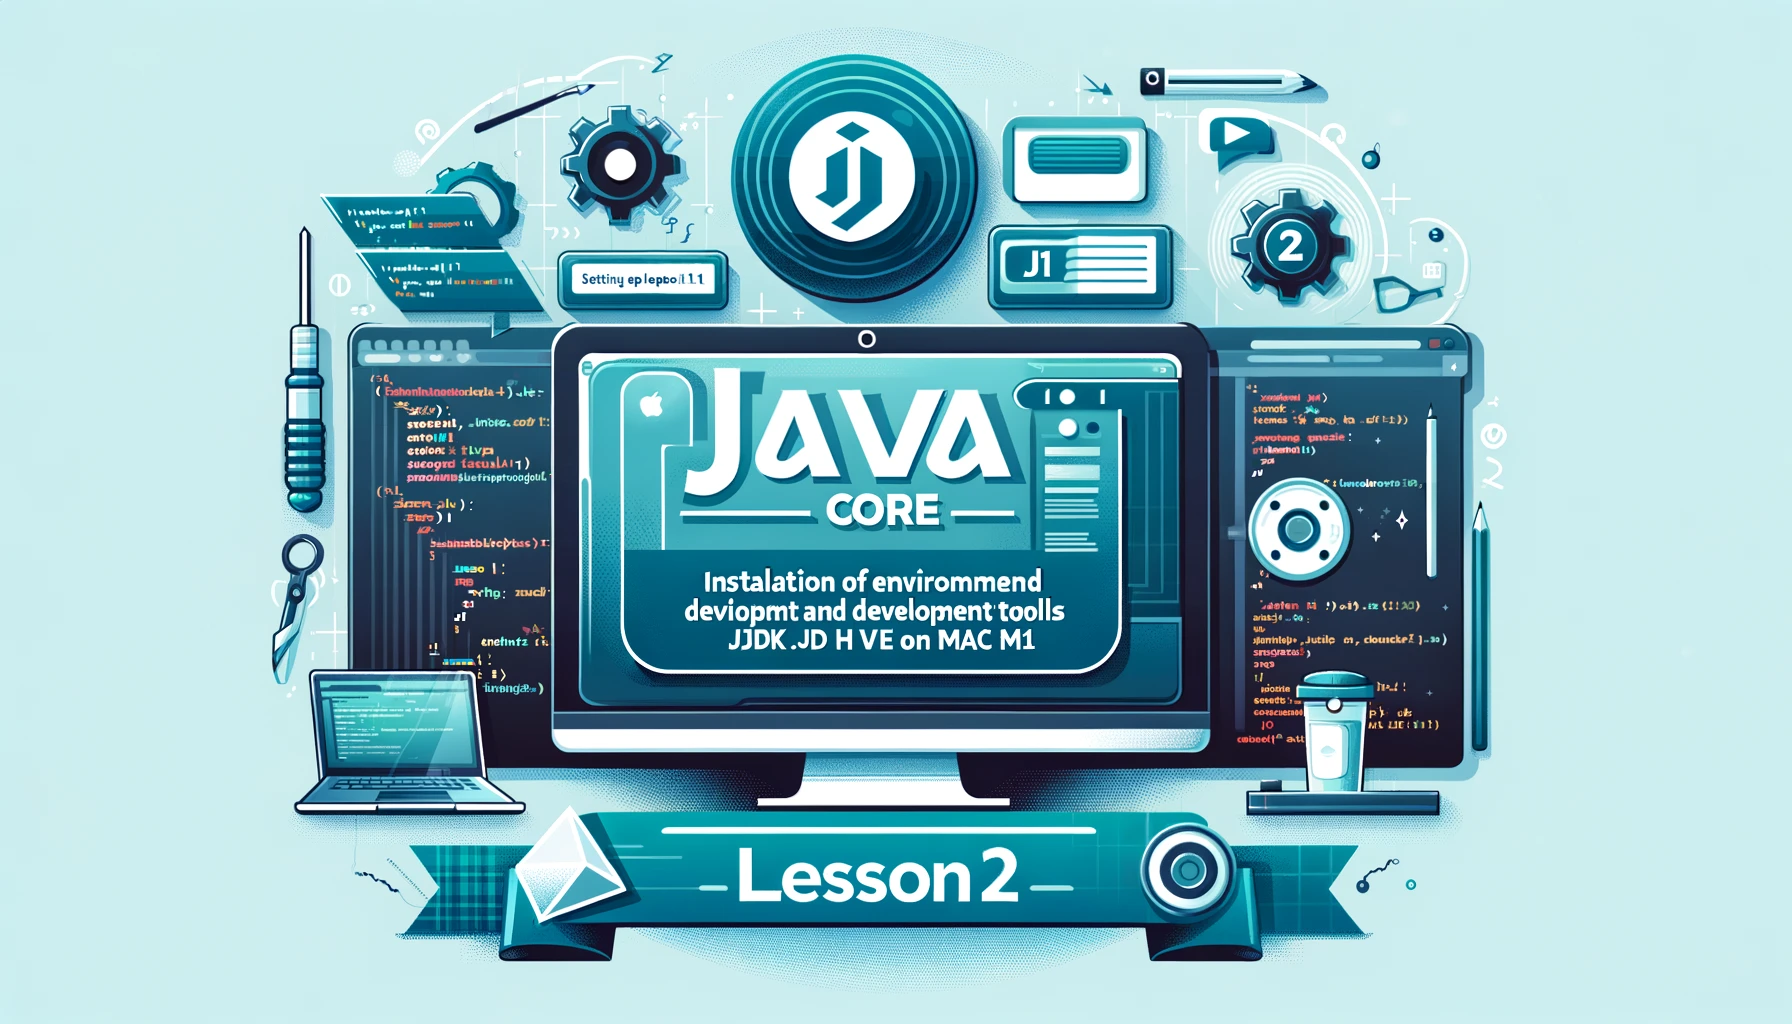 Lesson 2 - Cài đặt môi trường và công cụ phát triển JDK 11 và thiết lập Java Home trên Mac M1